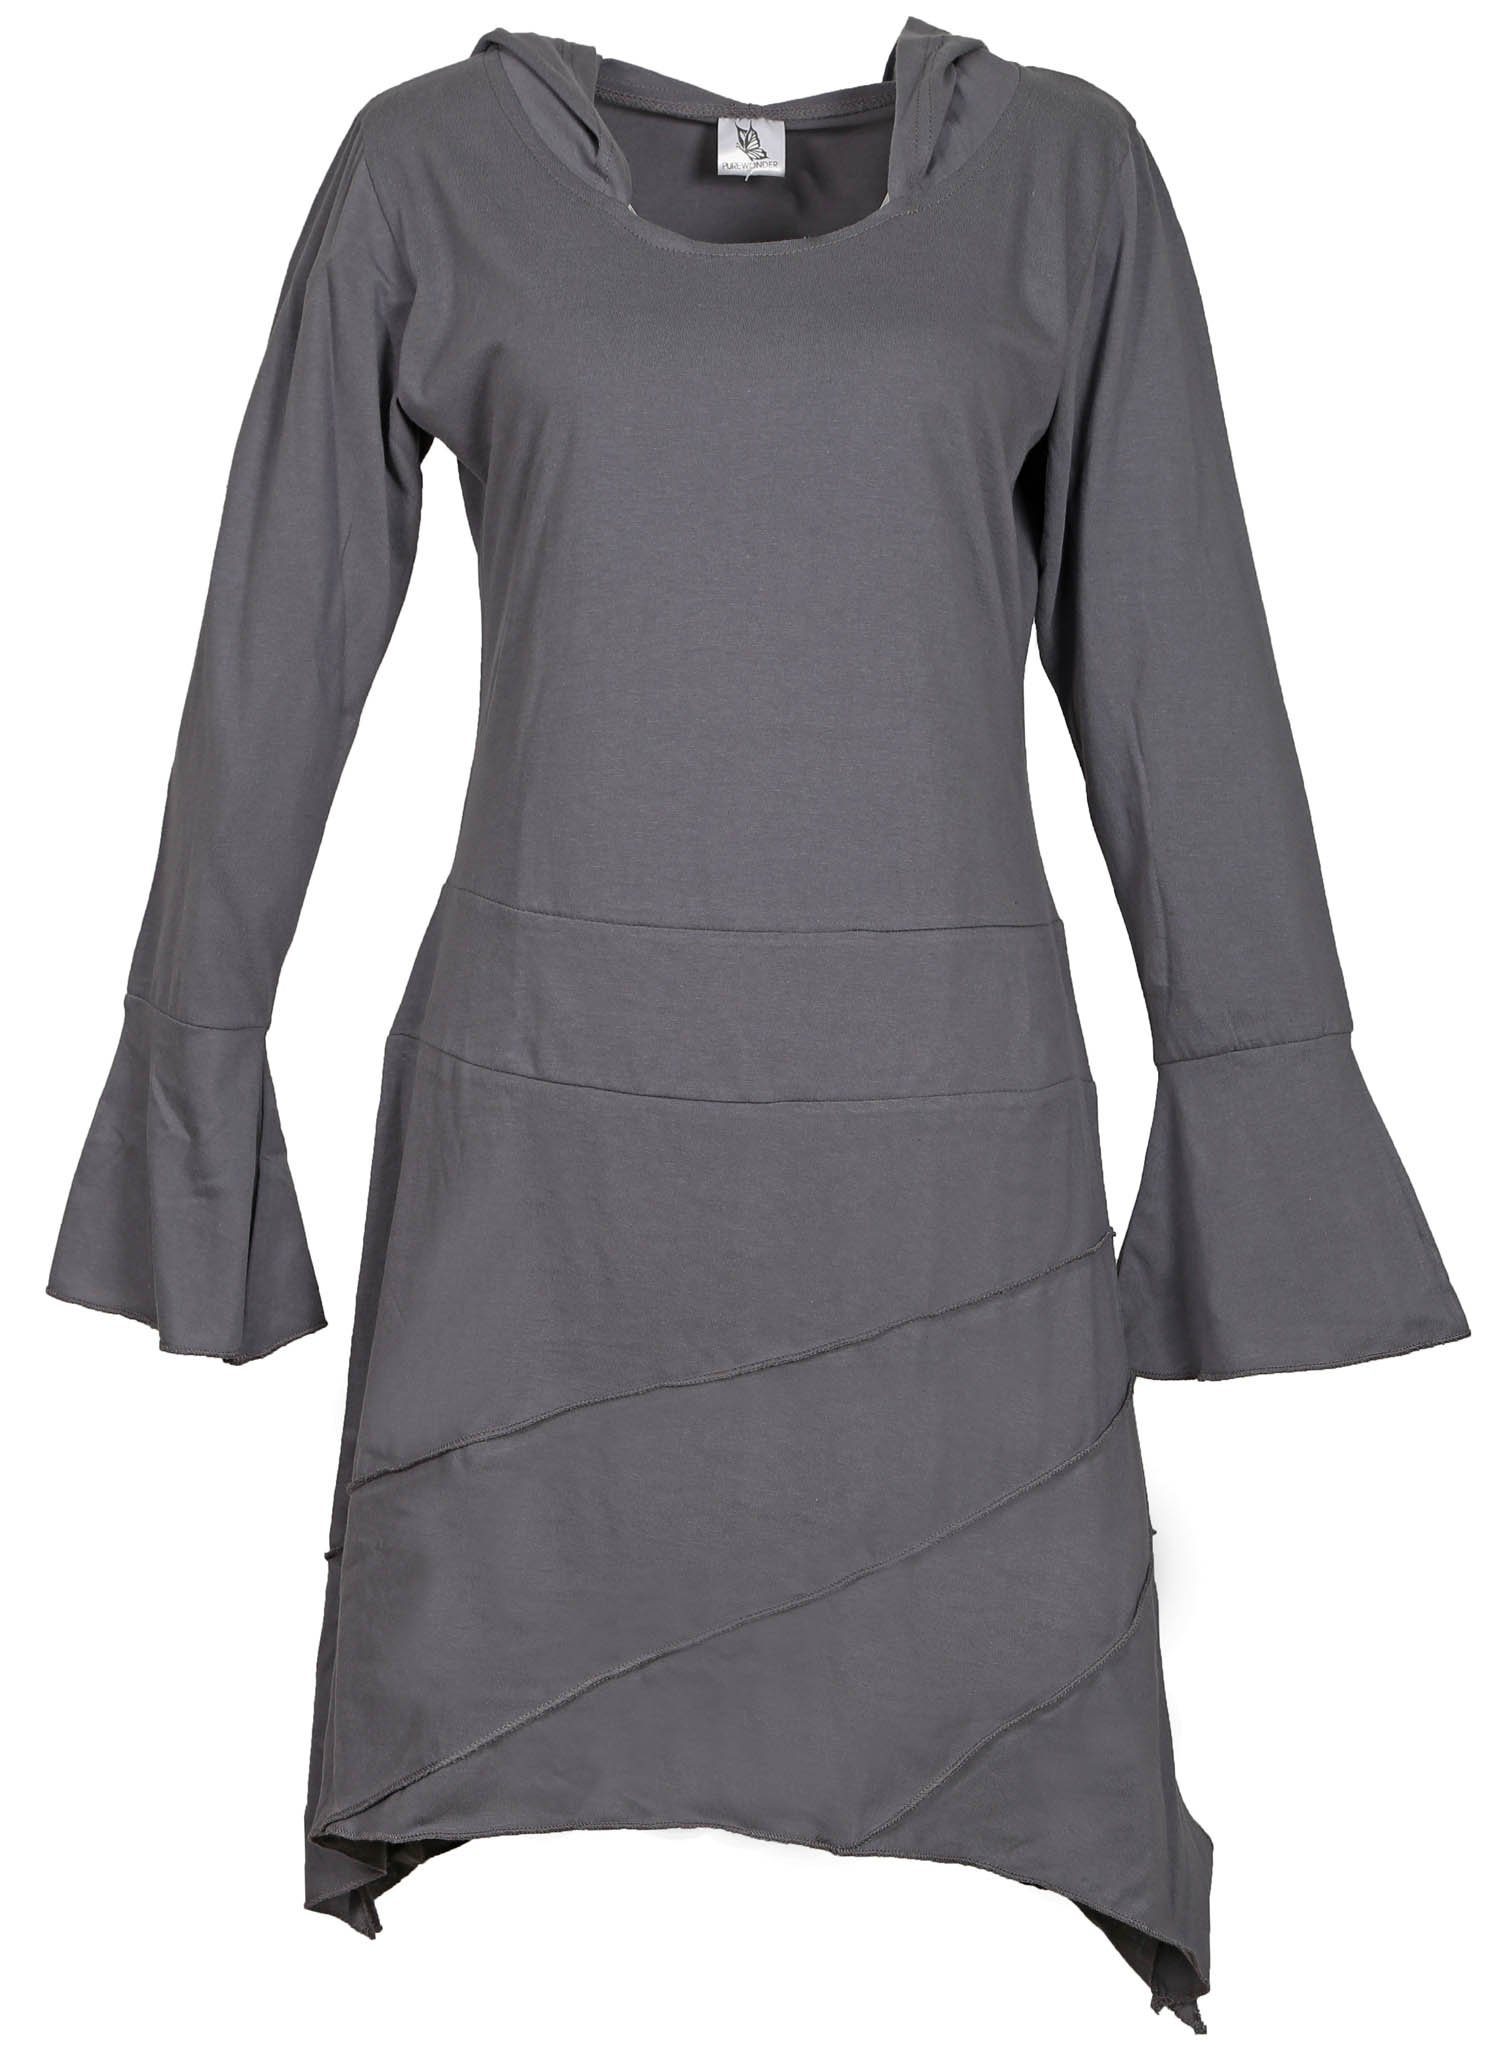 Grau Tunika Tunikakleid PUREWONDER mit Jersey Zipfelkapuze Sommerkleid aus leichtem